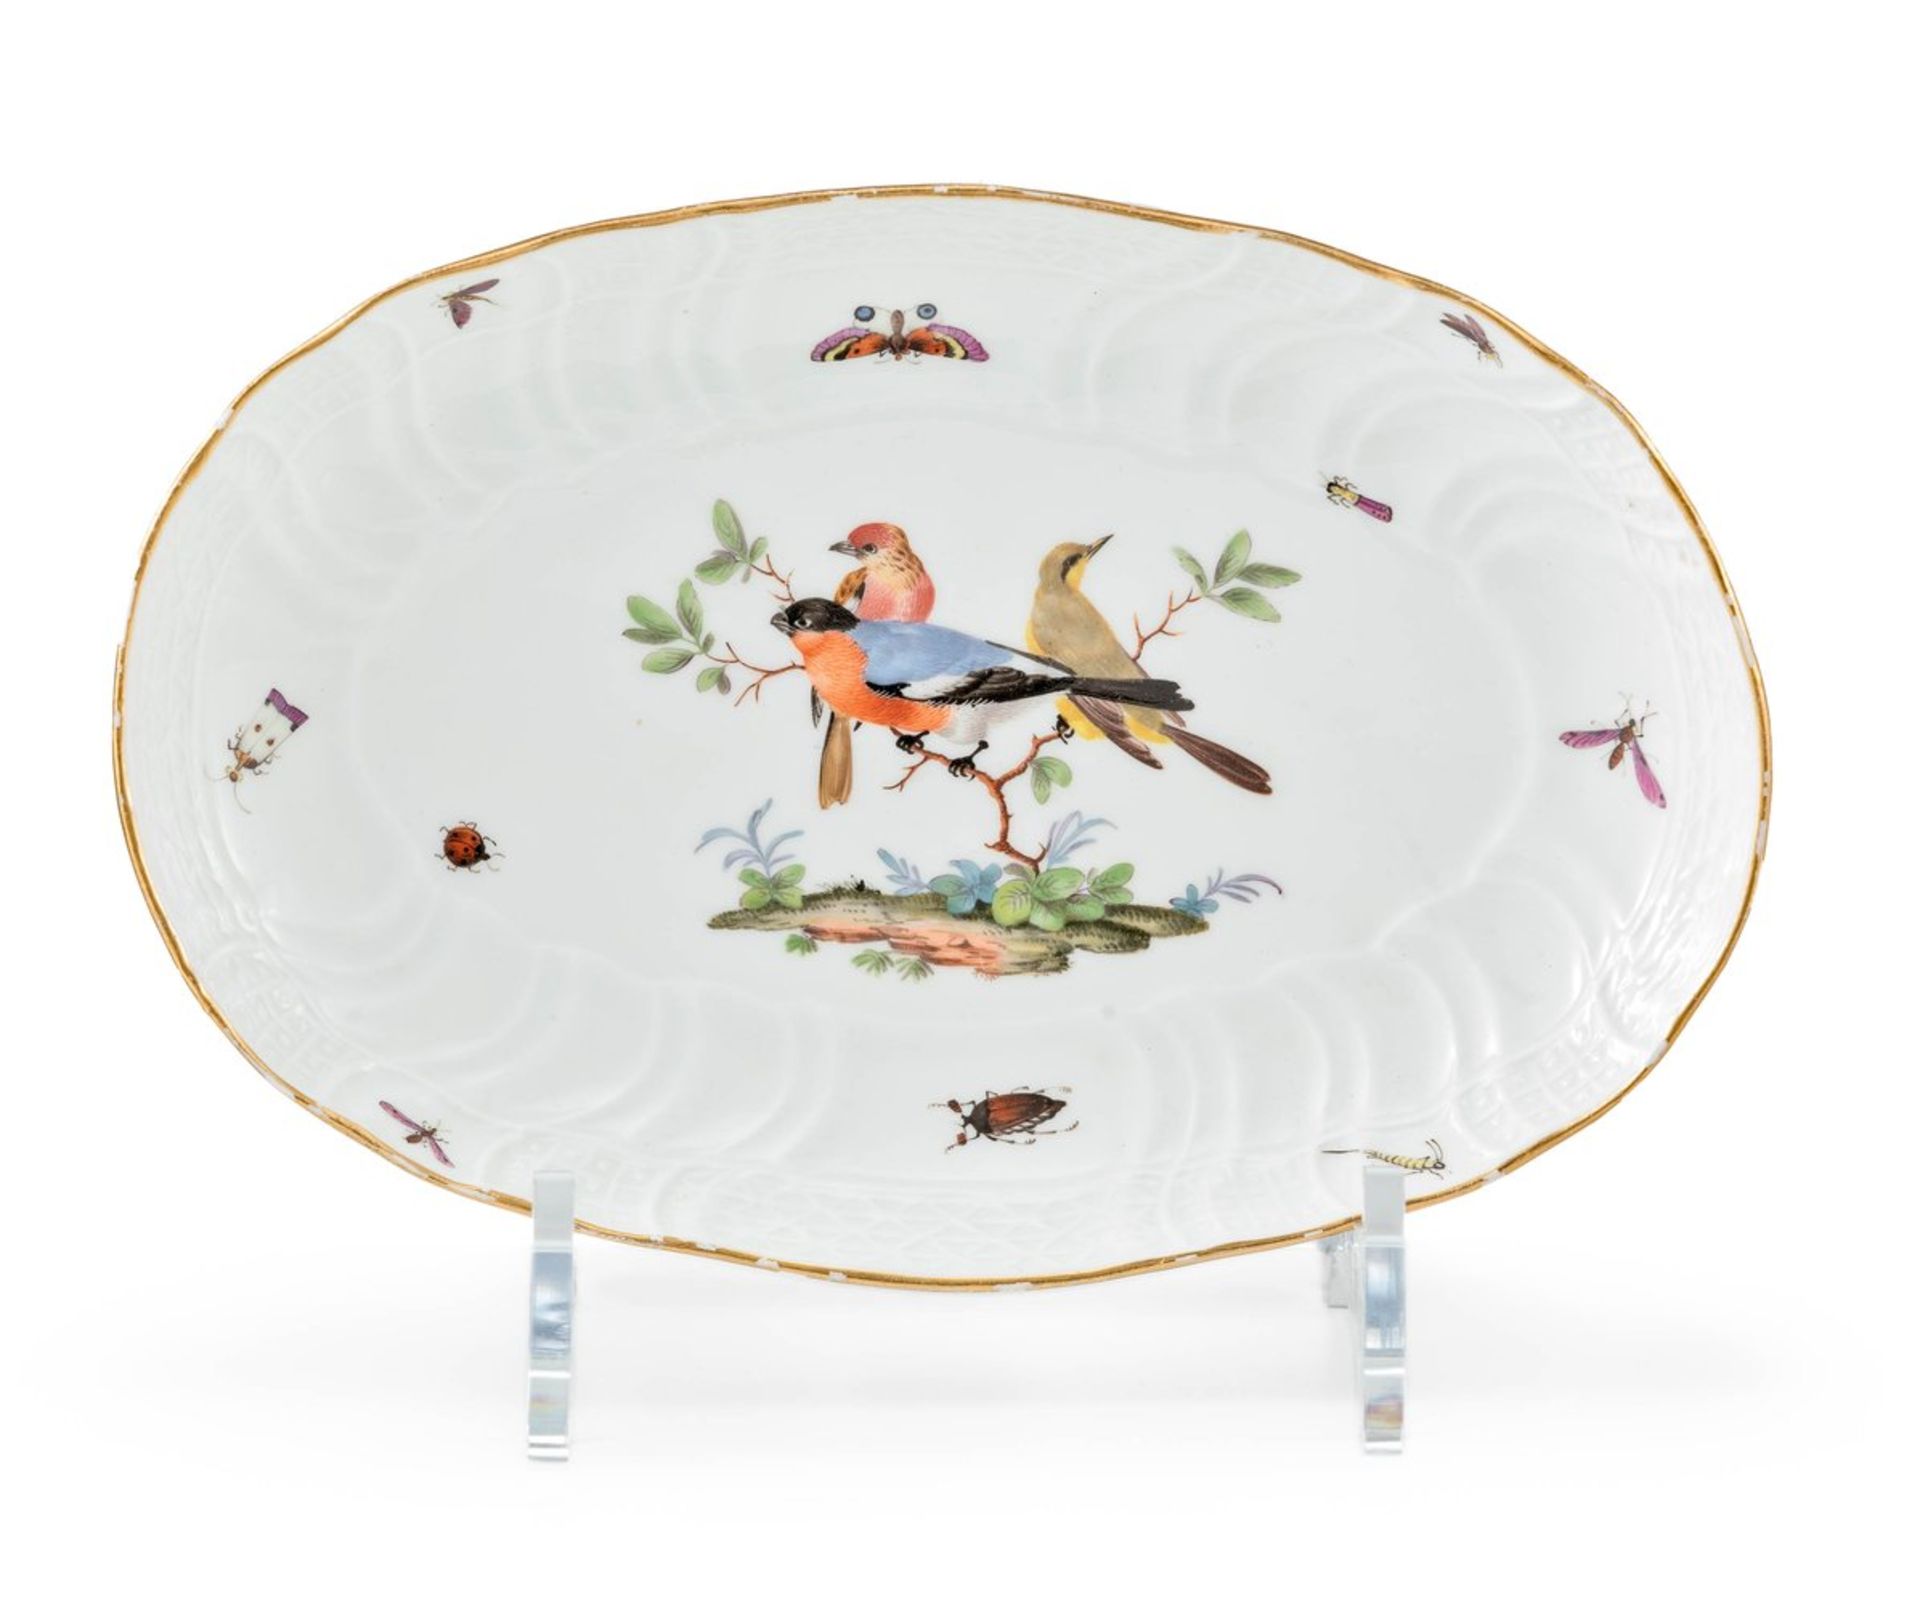 Ovale Schale mit Vögeln und Insekten für Friedrich den Großen